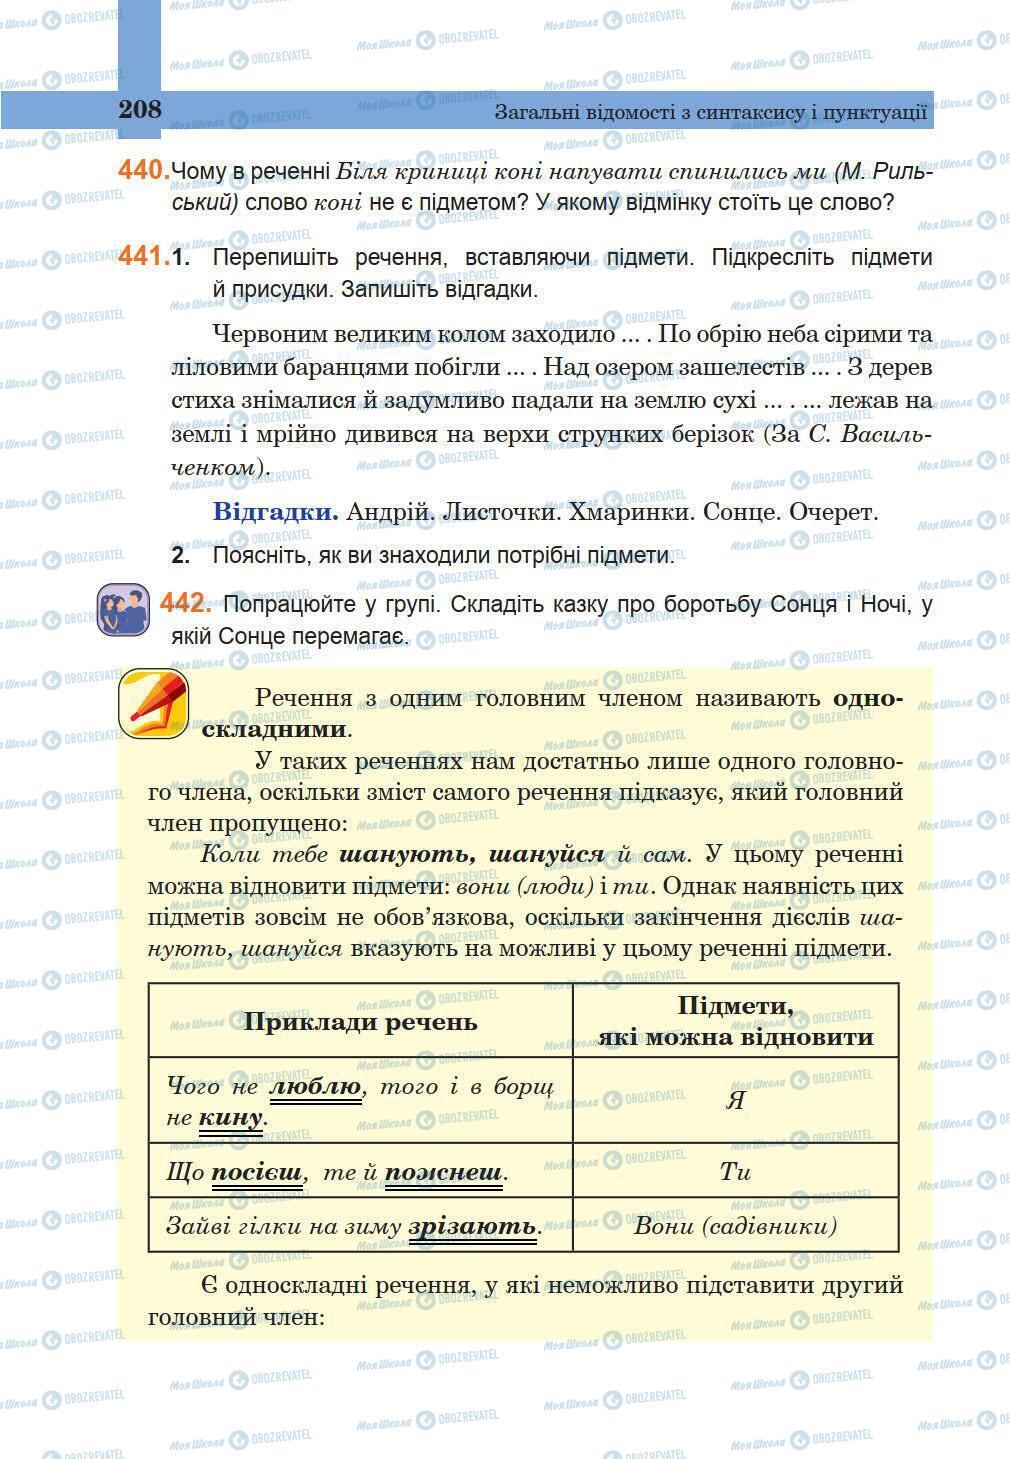 Підручники Українська мова 5 клас сторінка 208